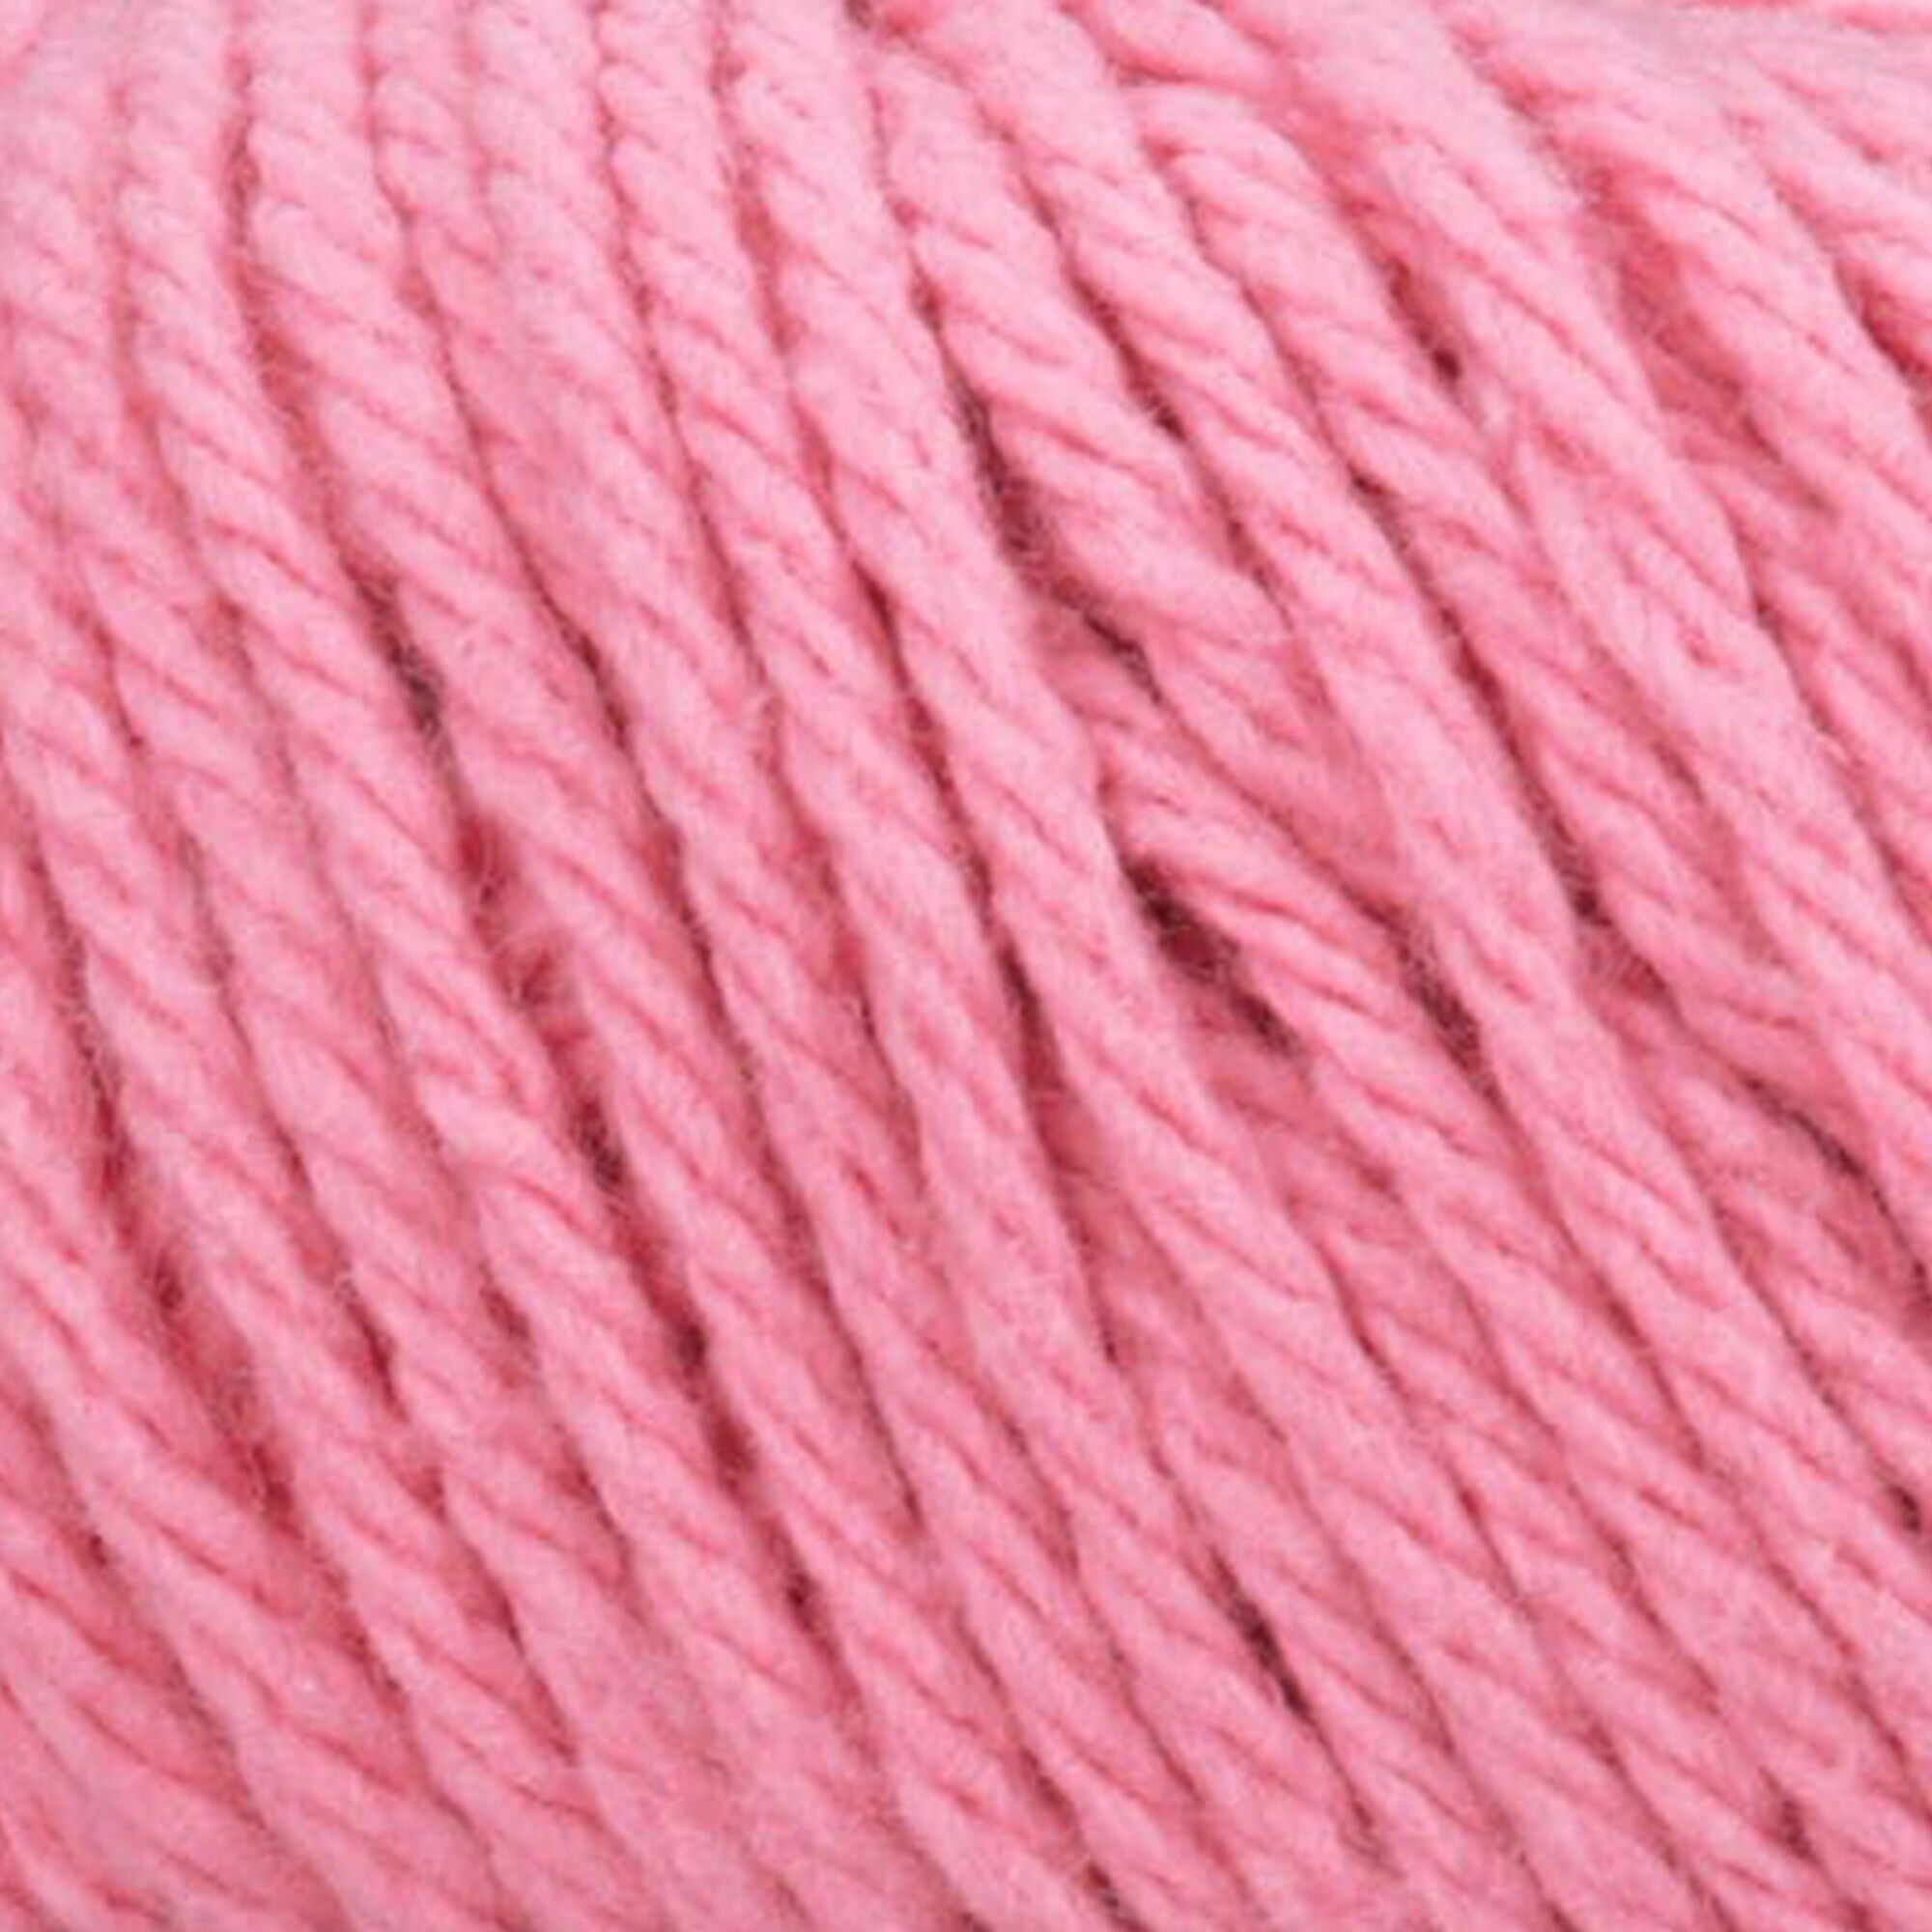 Lily Sugar'n Cream® Super Size #4 Medium Cotton Yarn, Rose Pink 4oz/113g,  200 Yards